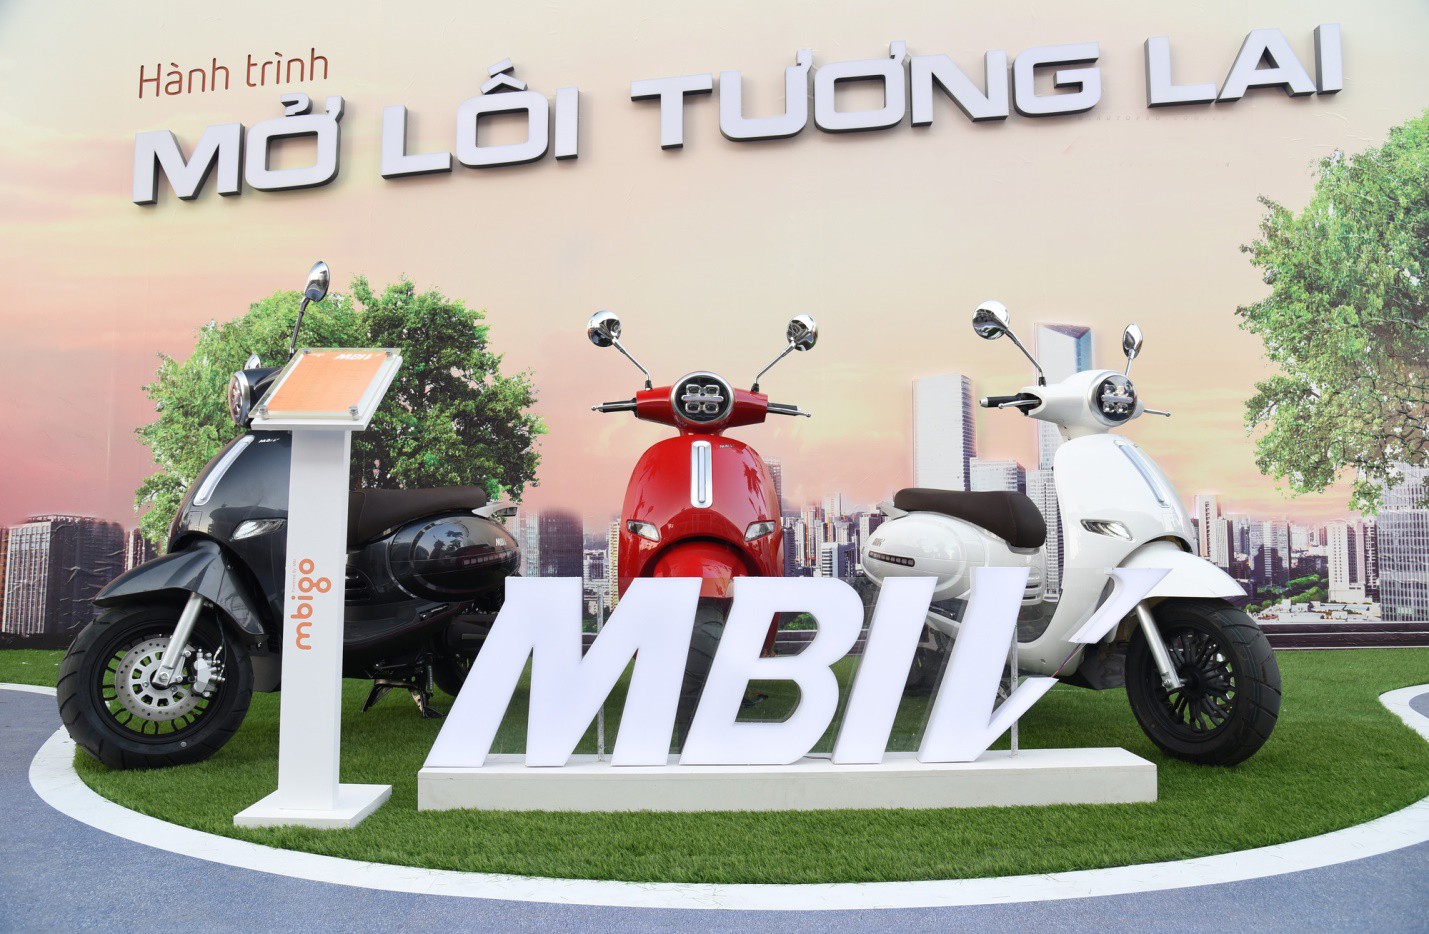 Xe máy điện MBI chính thức ra mắt tại Việt Nam với giá sốc và chính sách gây choáng - Ảnh 2.